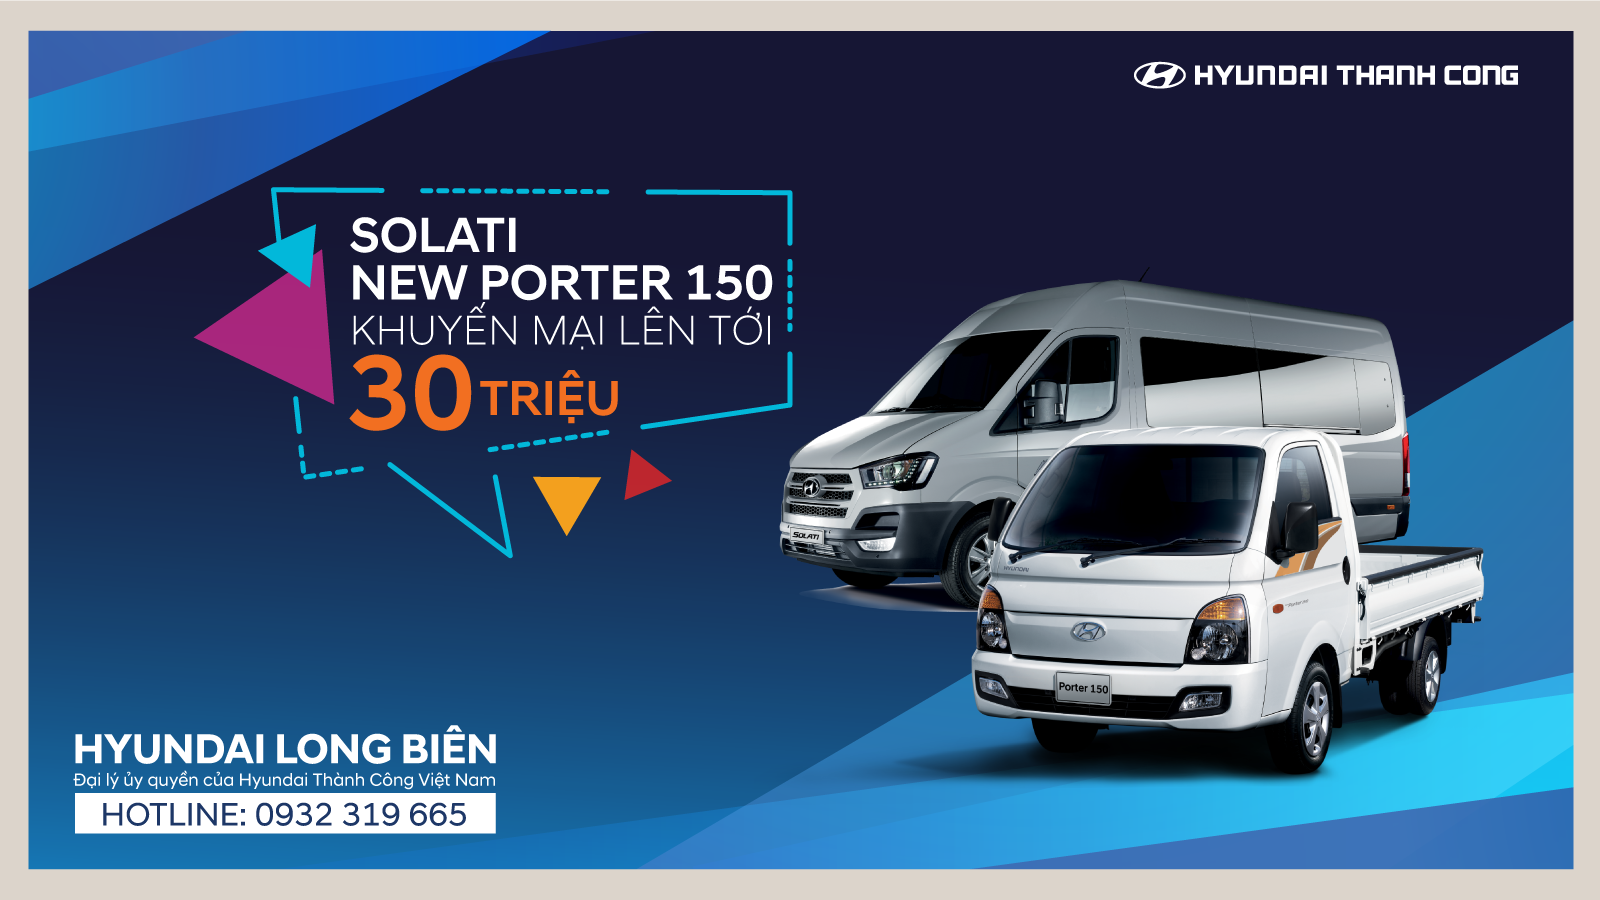 Hyundai Solati | New Porter 150 khuyến mại lên tới 30 triệu đồng đến hết 31/10/2018